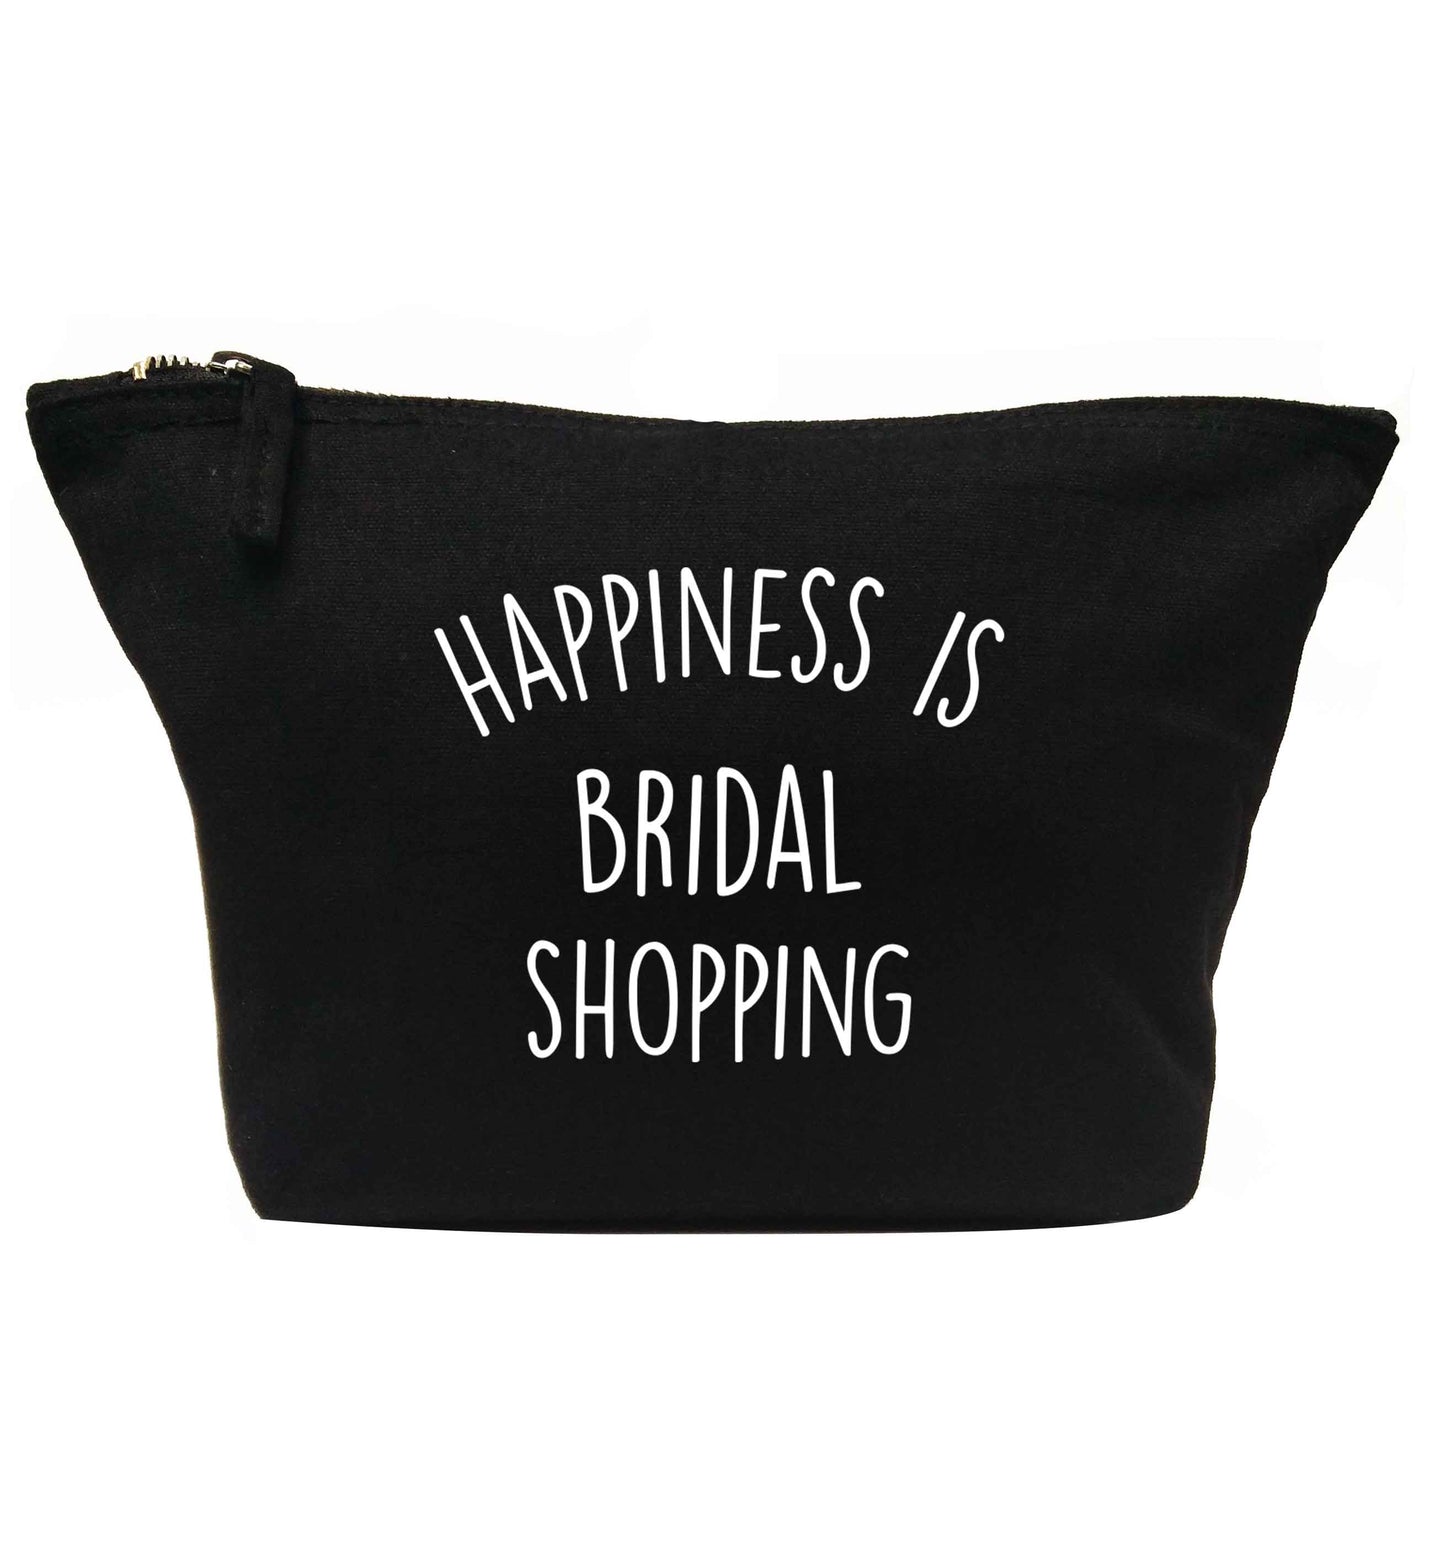 Happiness is bridal shopping | Makeup / wash bag